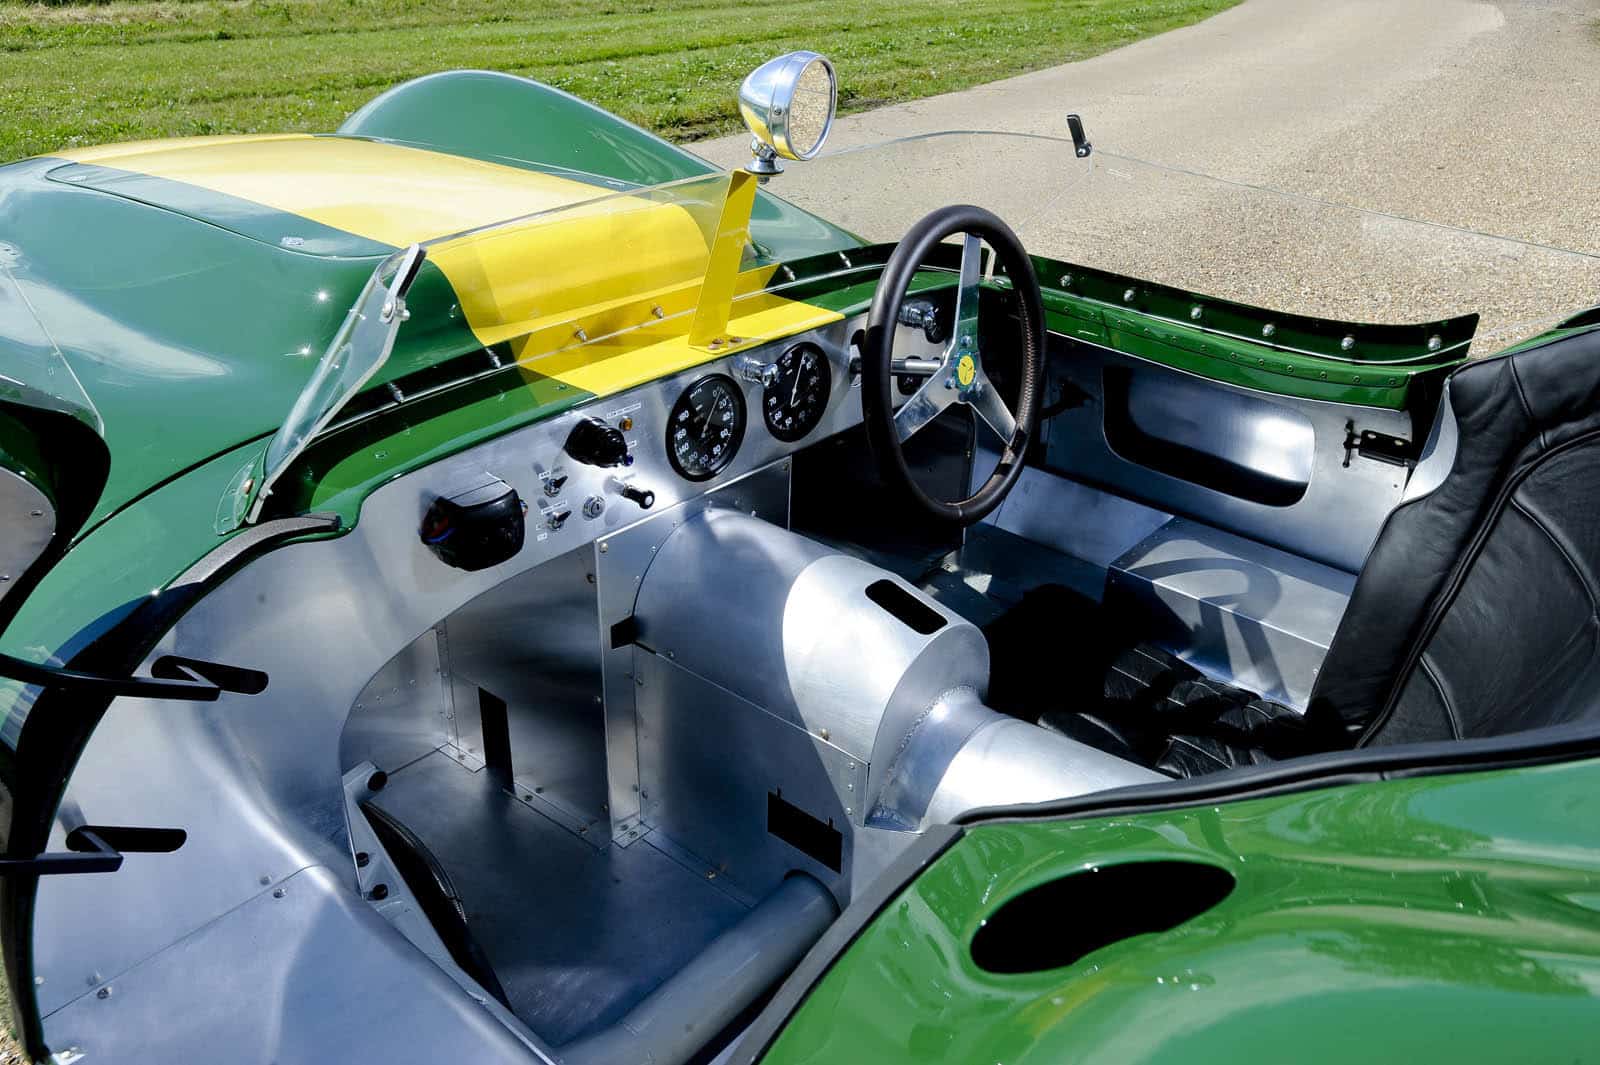 Lister Jaguar Knobbly Stirling Moss edition 20